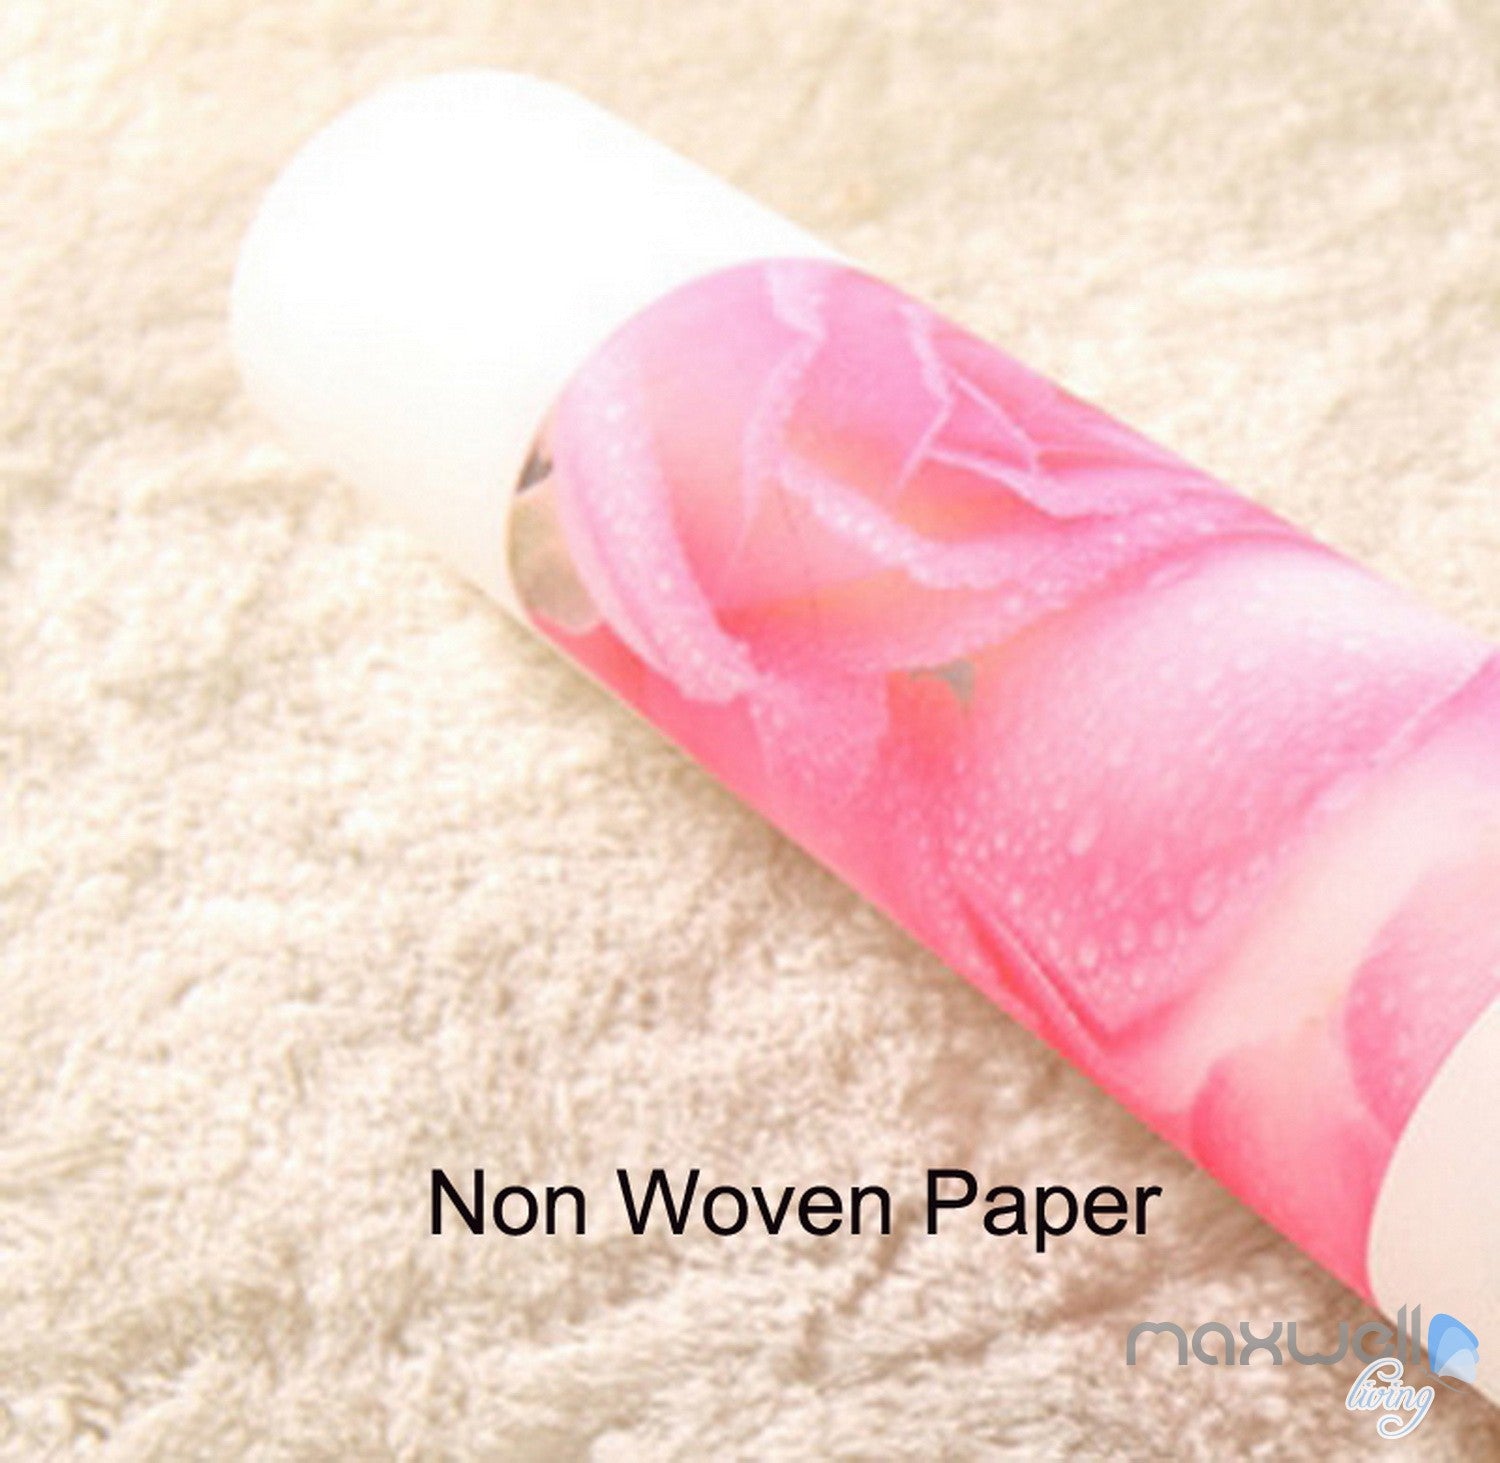 Non woven paper